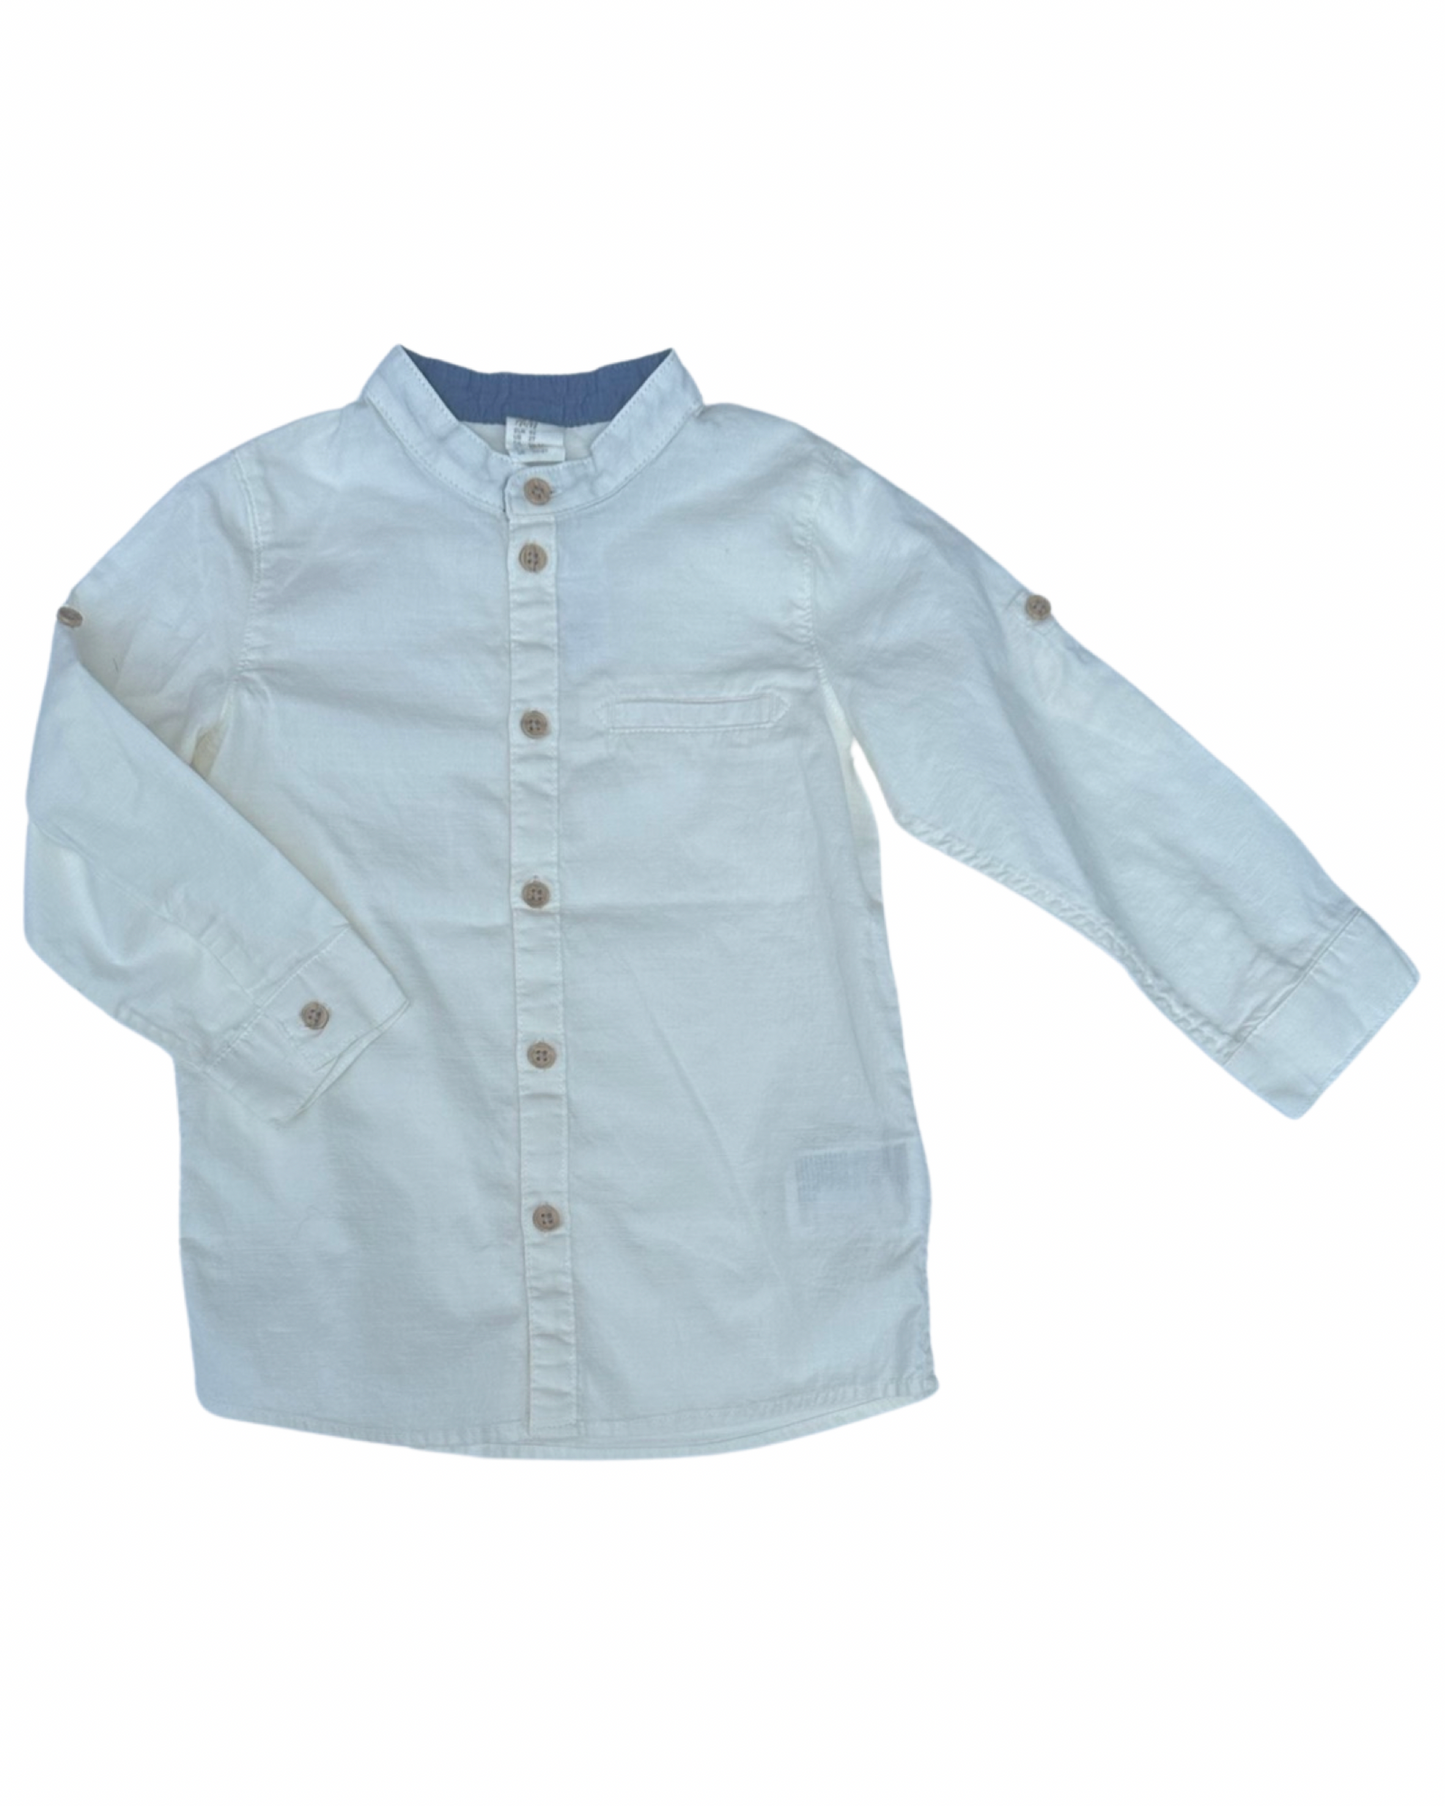 H&M cream linen shirt (size 1.5-2yrs)